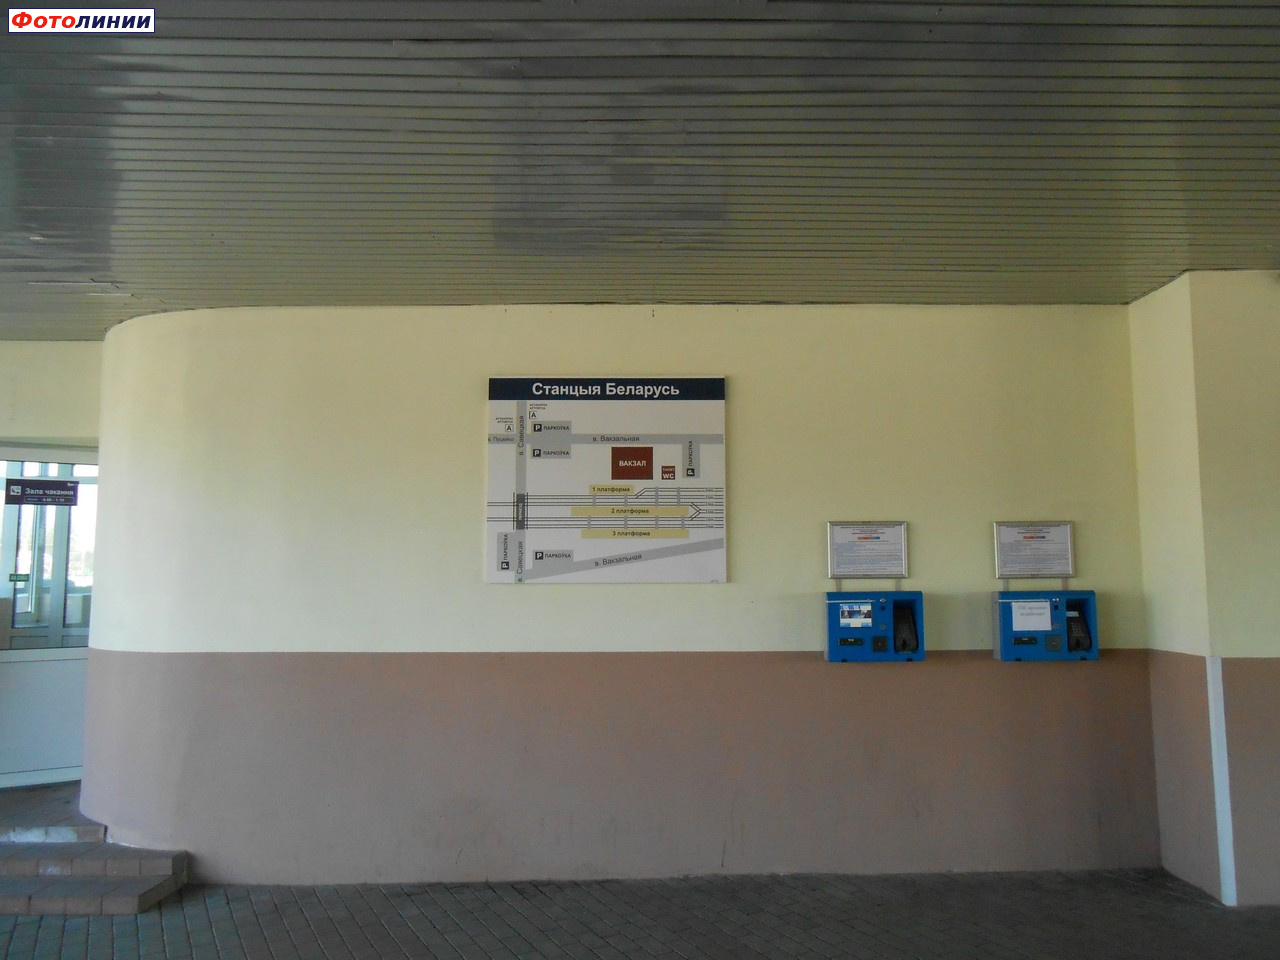 Стена со схемой станции и терминалами для покупки билетов